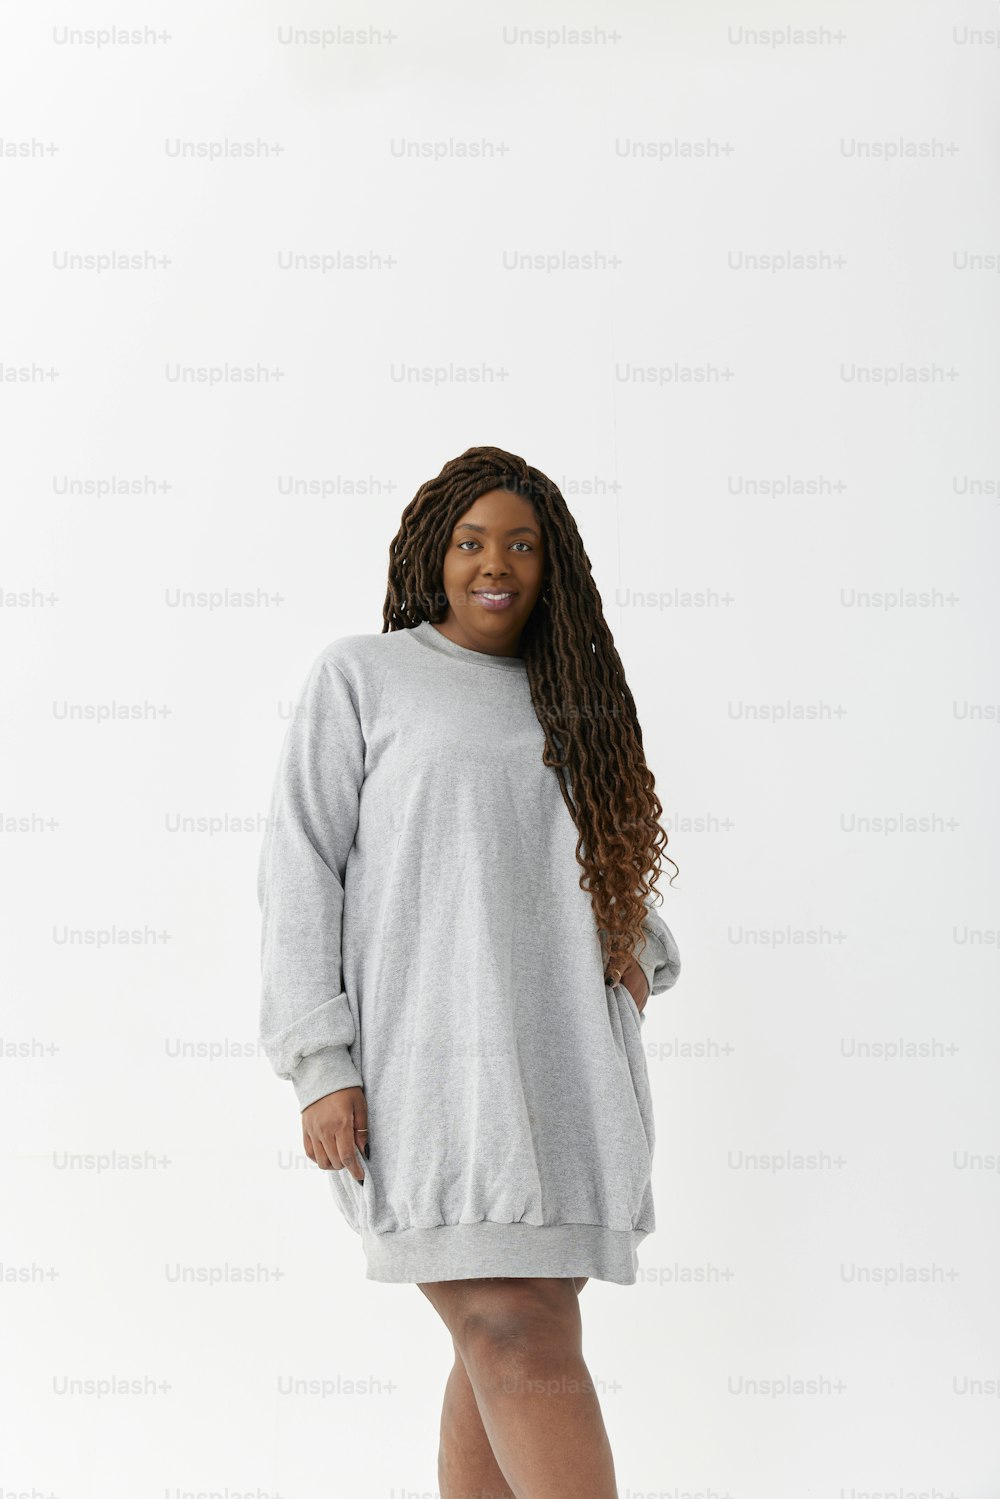 Eine Frau in einem grauen Pulloverkleid posiert für ein Foto